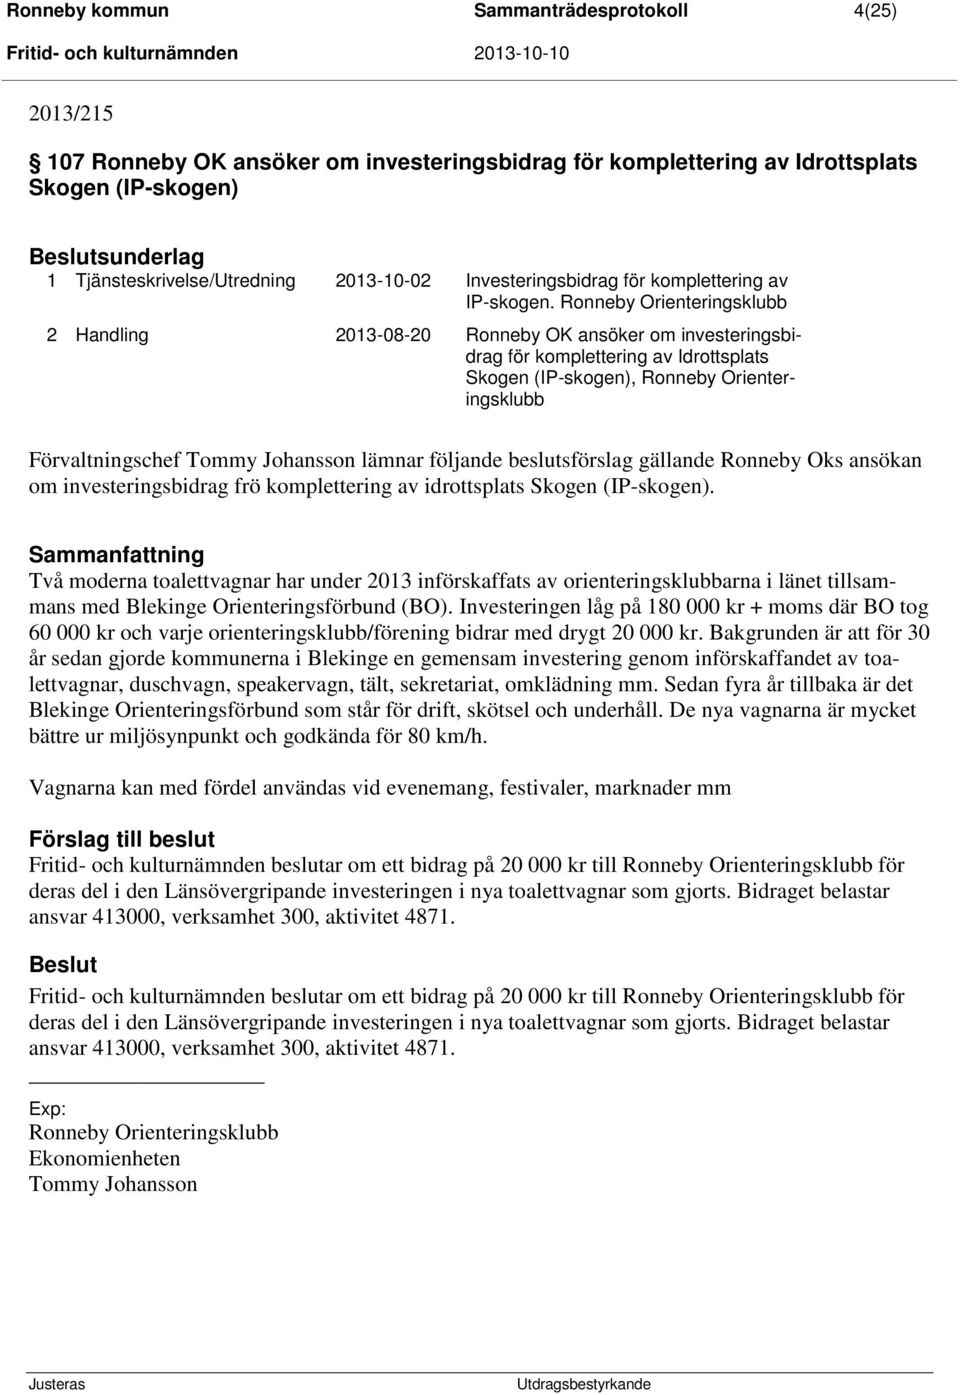 Ronneby Orienteringsklubb 2 Handling 2013-08-20 Ronneby OK ansöker om investeringsbidrag för komplettering av Idrottsplats Skogen (IP-skogen), Ronneby Orienteringsklubb Förvaltningschef Tommy